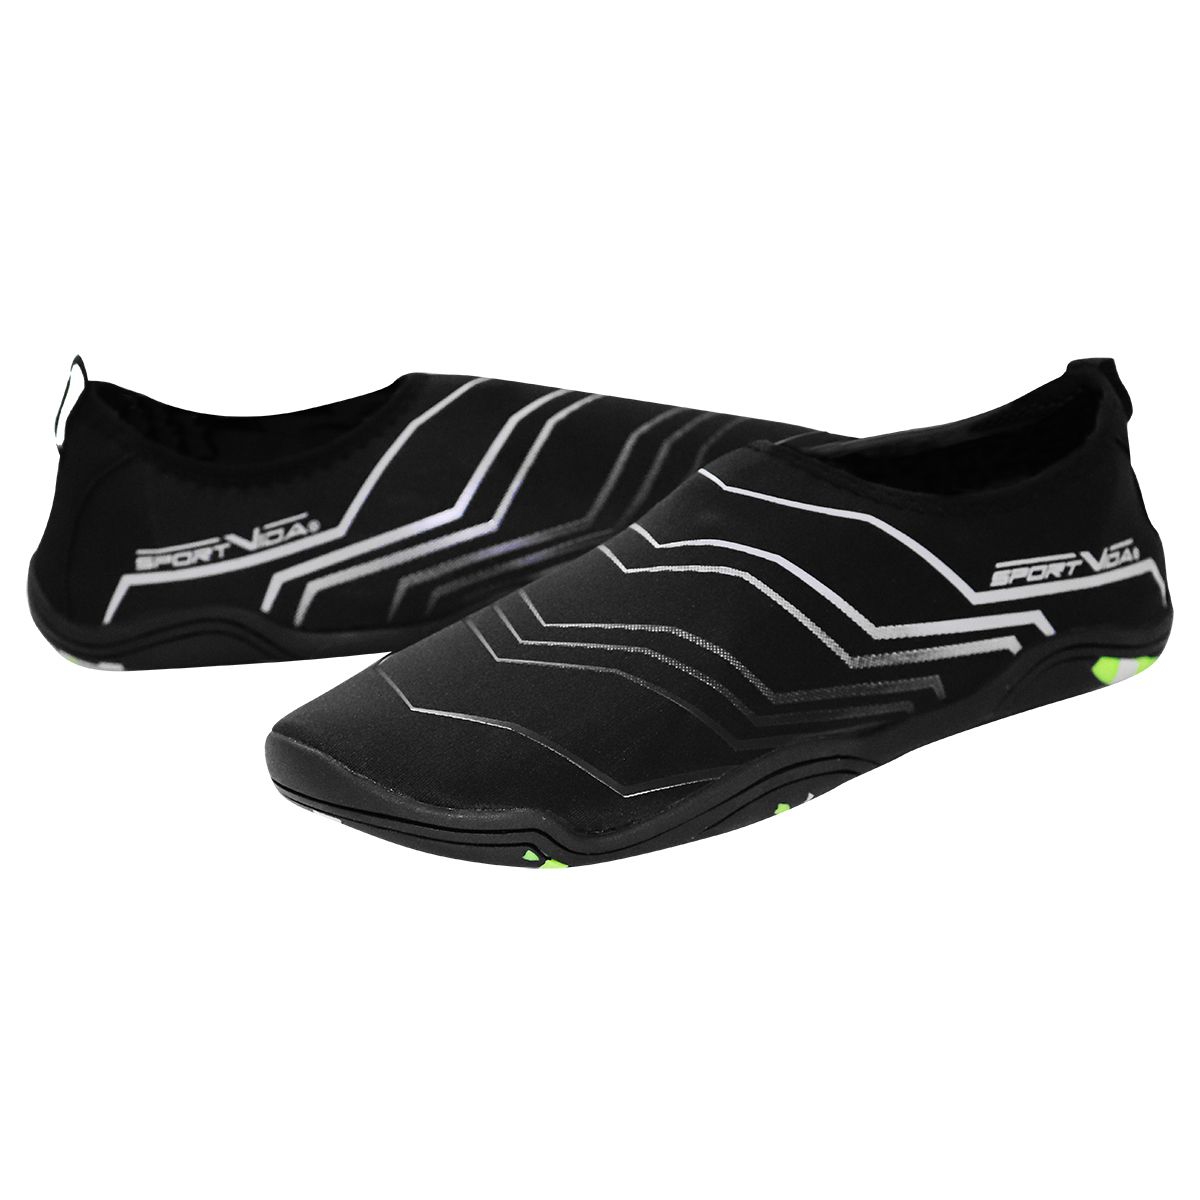 Обувь для пляжа и кораллов (аквашузы) SportVida SV-GY0006-R43 Size 43 Black/Grey